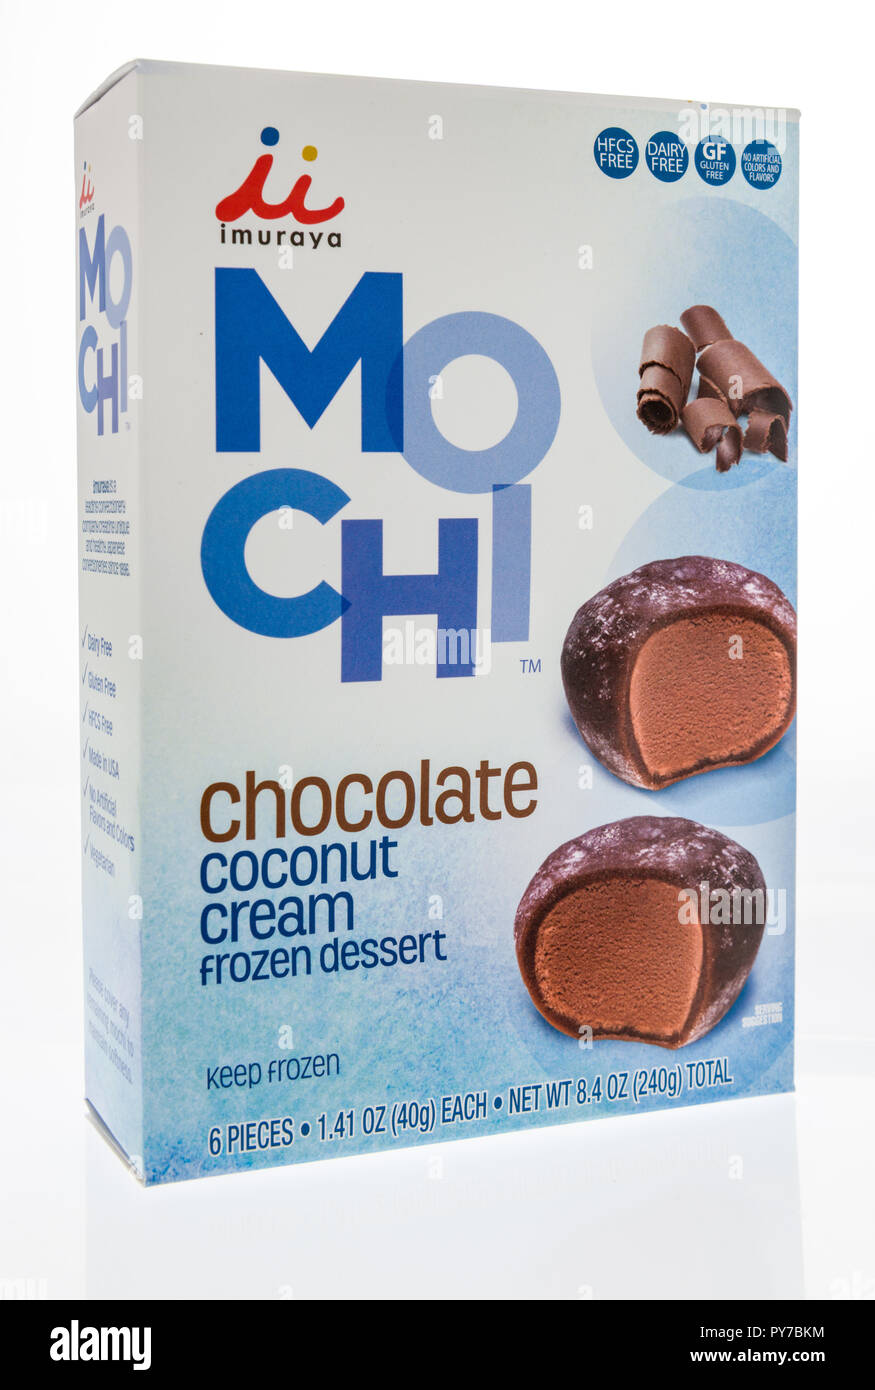 Winneconne, WI - 10. Oktober 2018: ein Paket von Imuraya Mo Chi chocolate Coconut cream gefrorene Dessert in einem isolierten Hintergrund Stockfoto